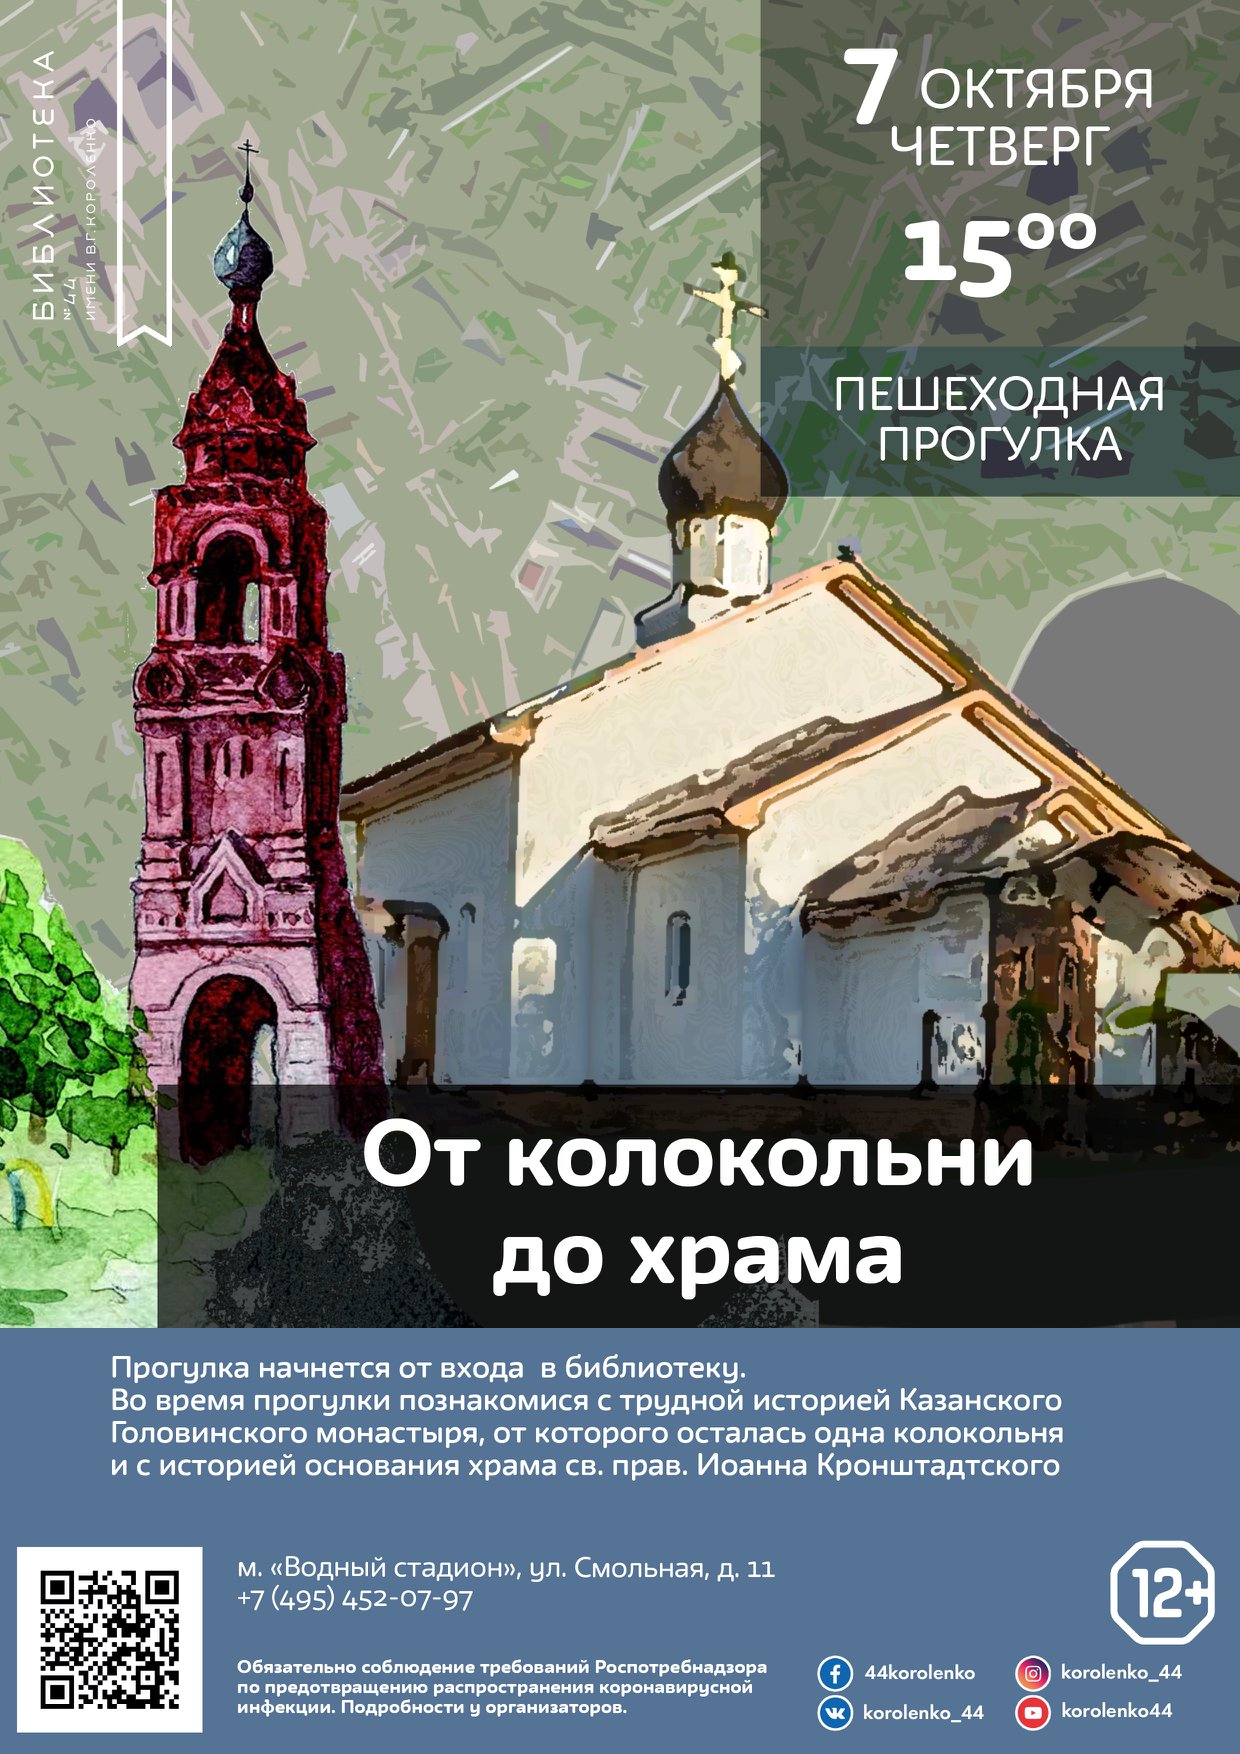 Экскурсия по территории Казанского Головинского монастыря состоится 7 октября